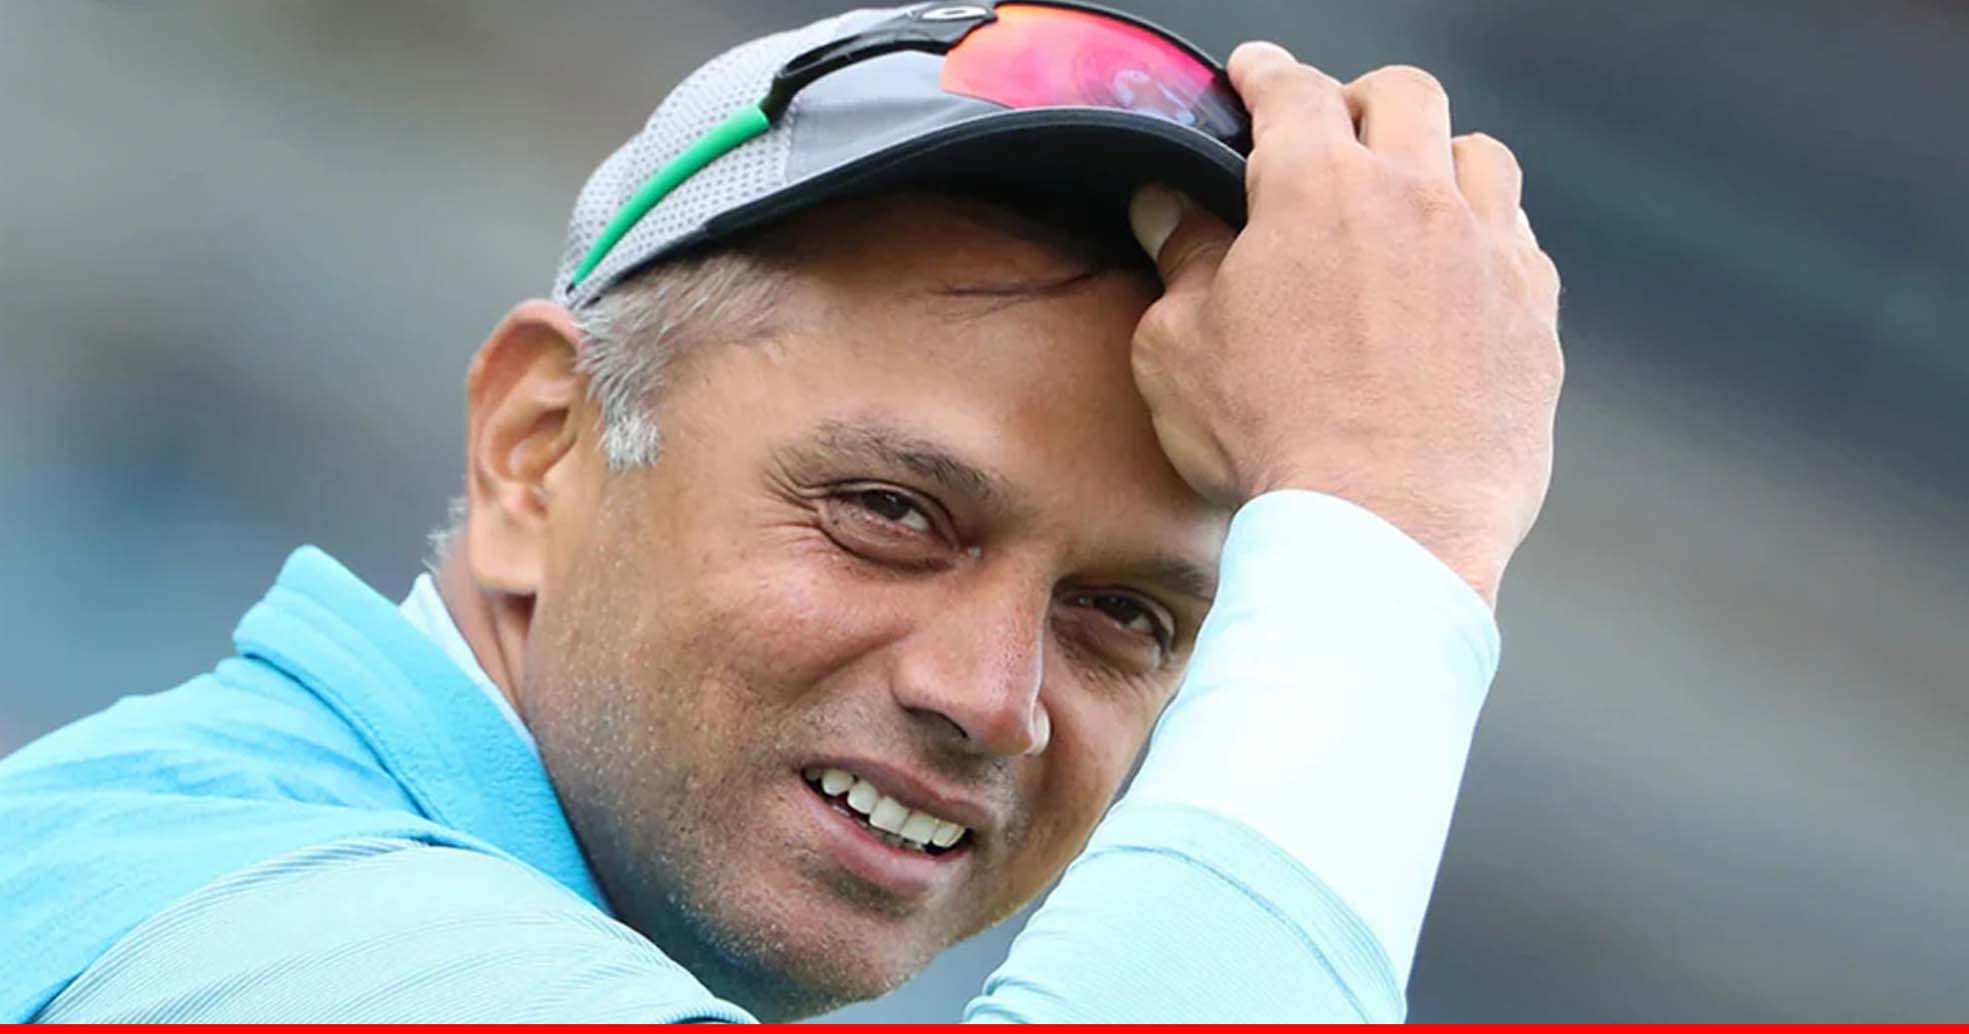 राहुल द्रविड़ होंगे श्रीलंका दौरे पर भारतीय क्रिकेट टीम के कोच: रिपोर्ट